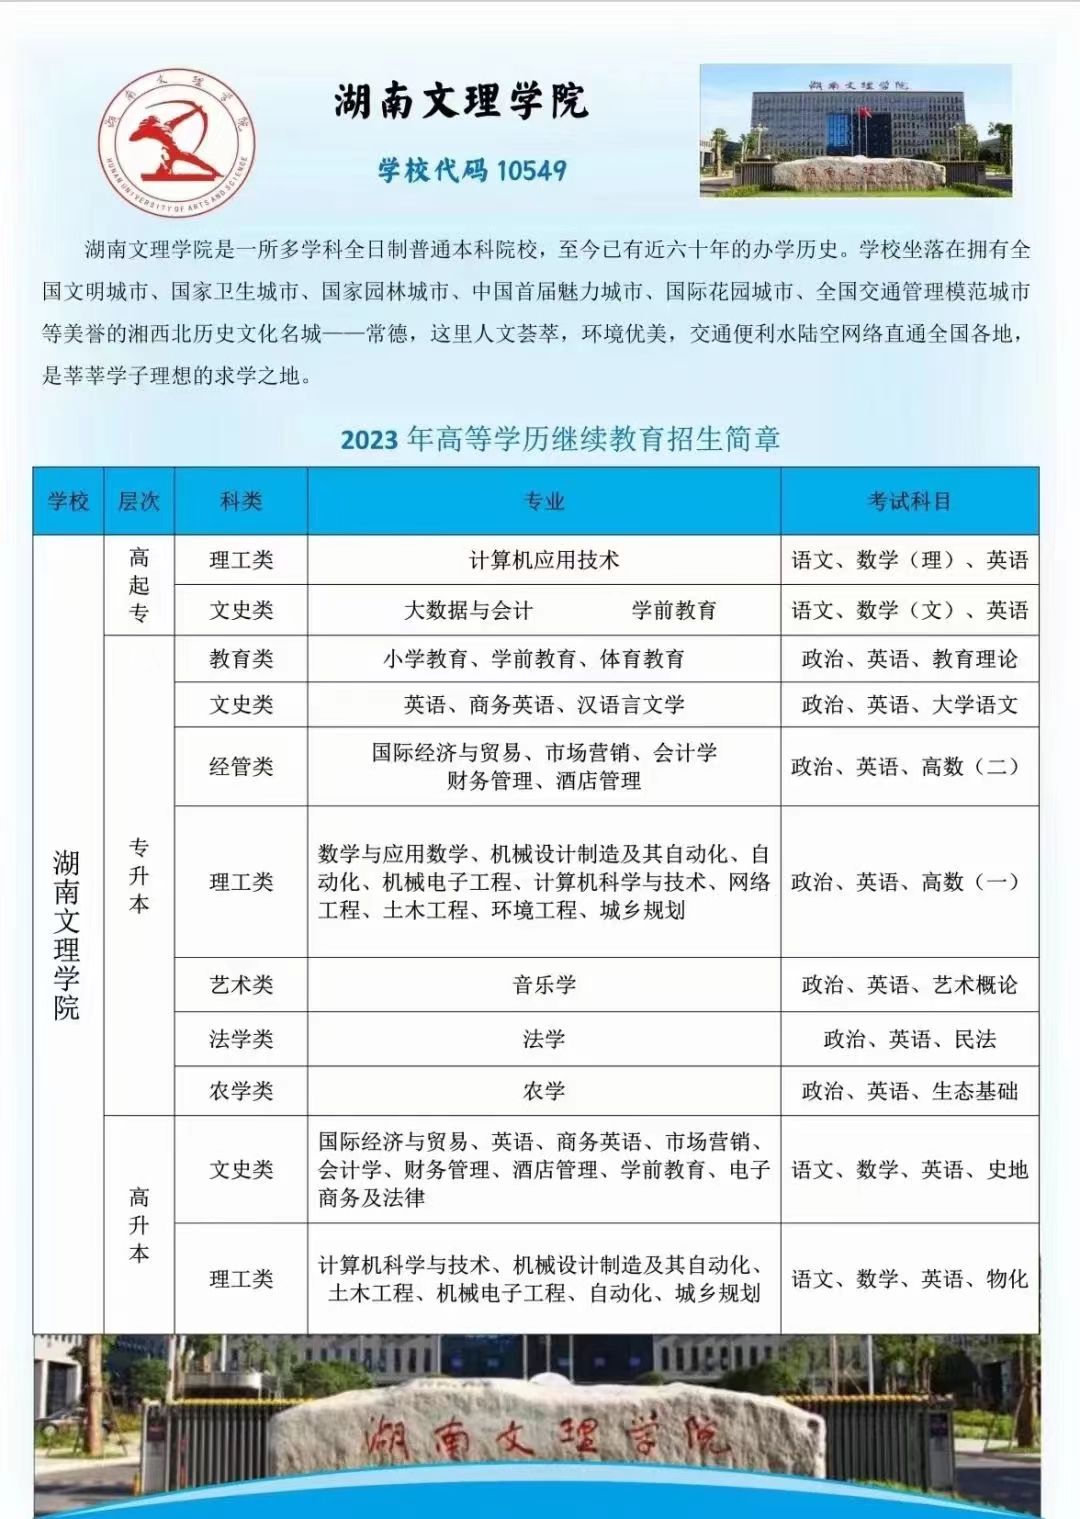 2023年湖南文理学院成人高考招生简章